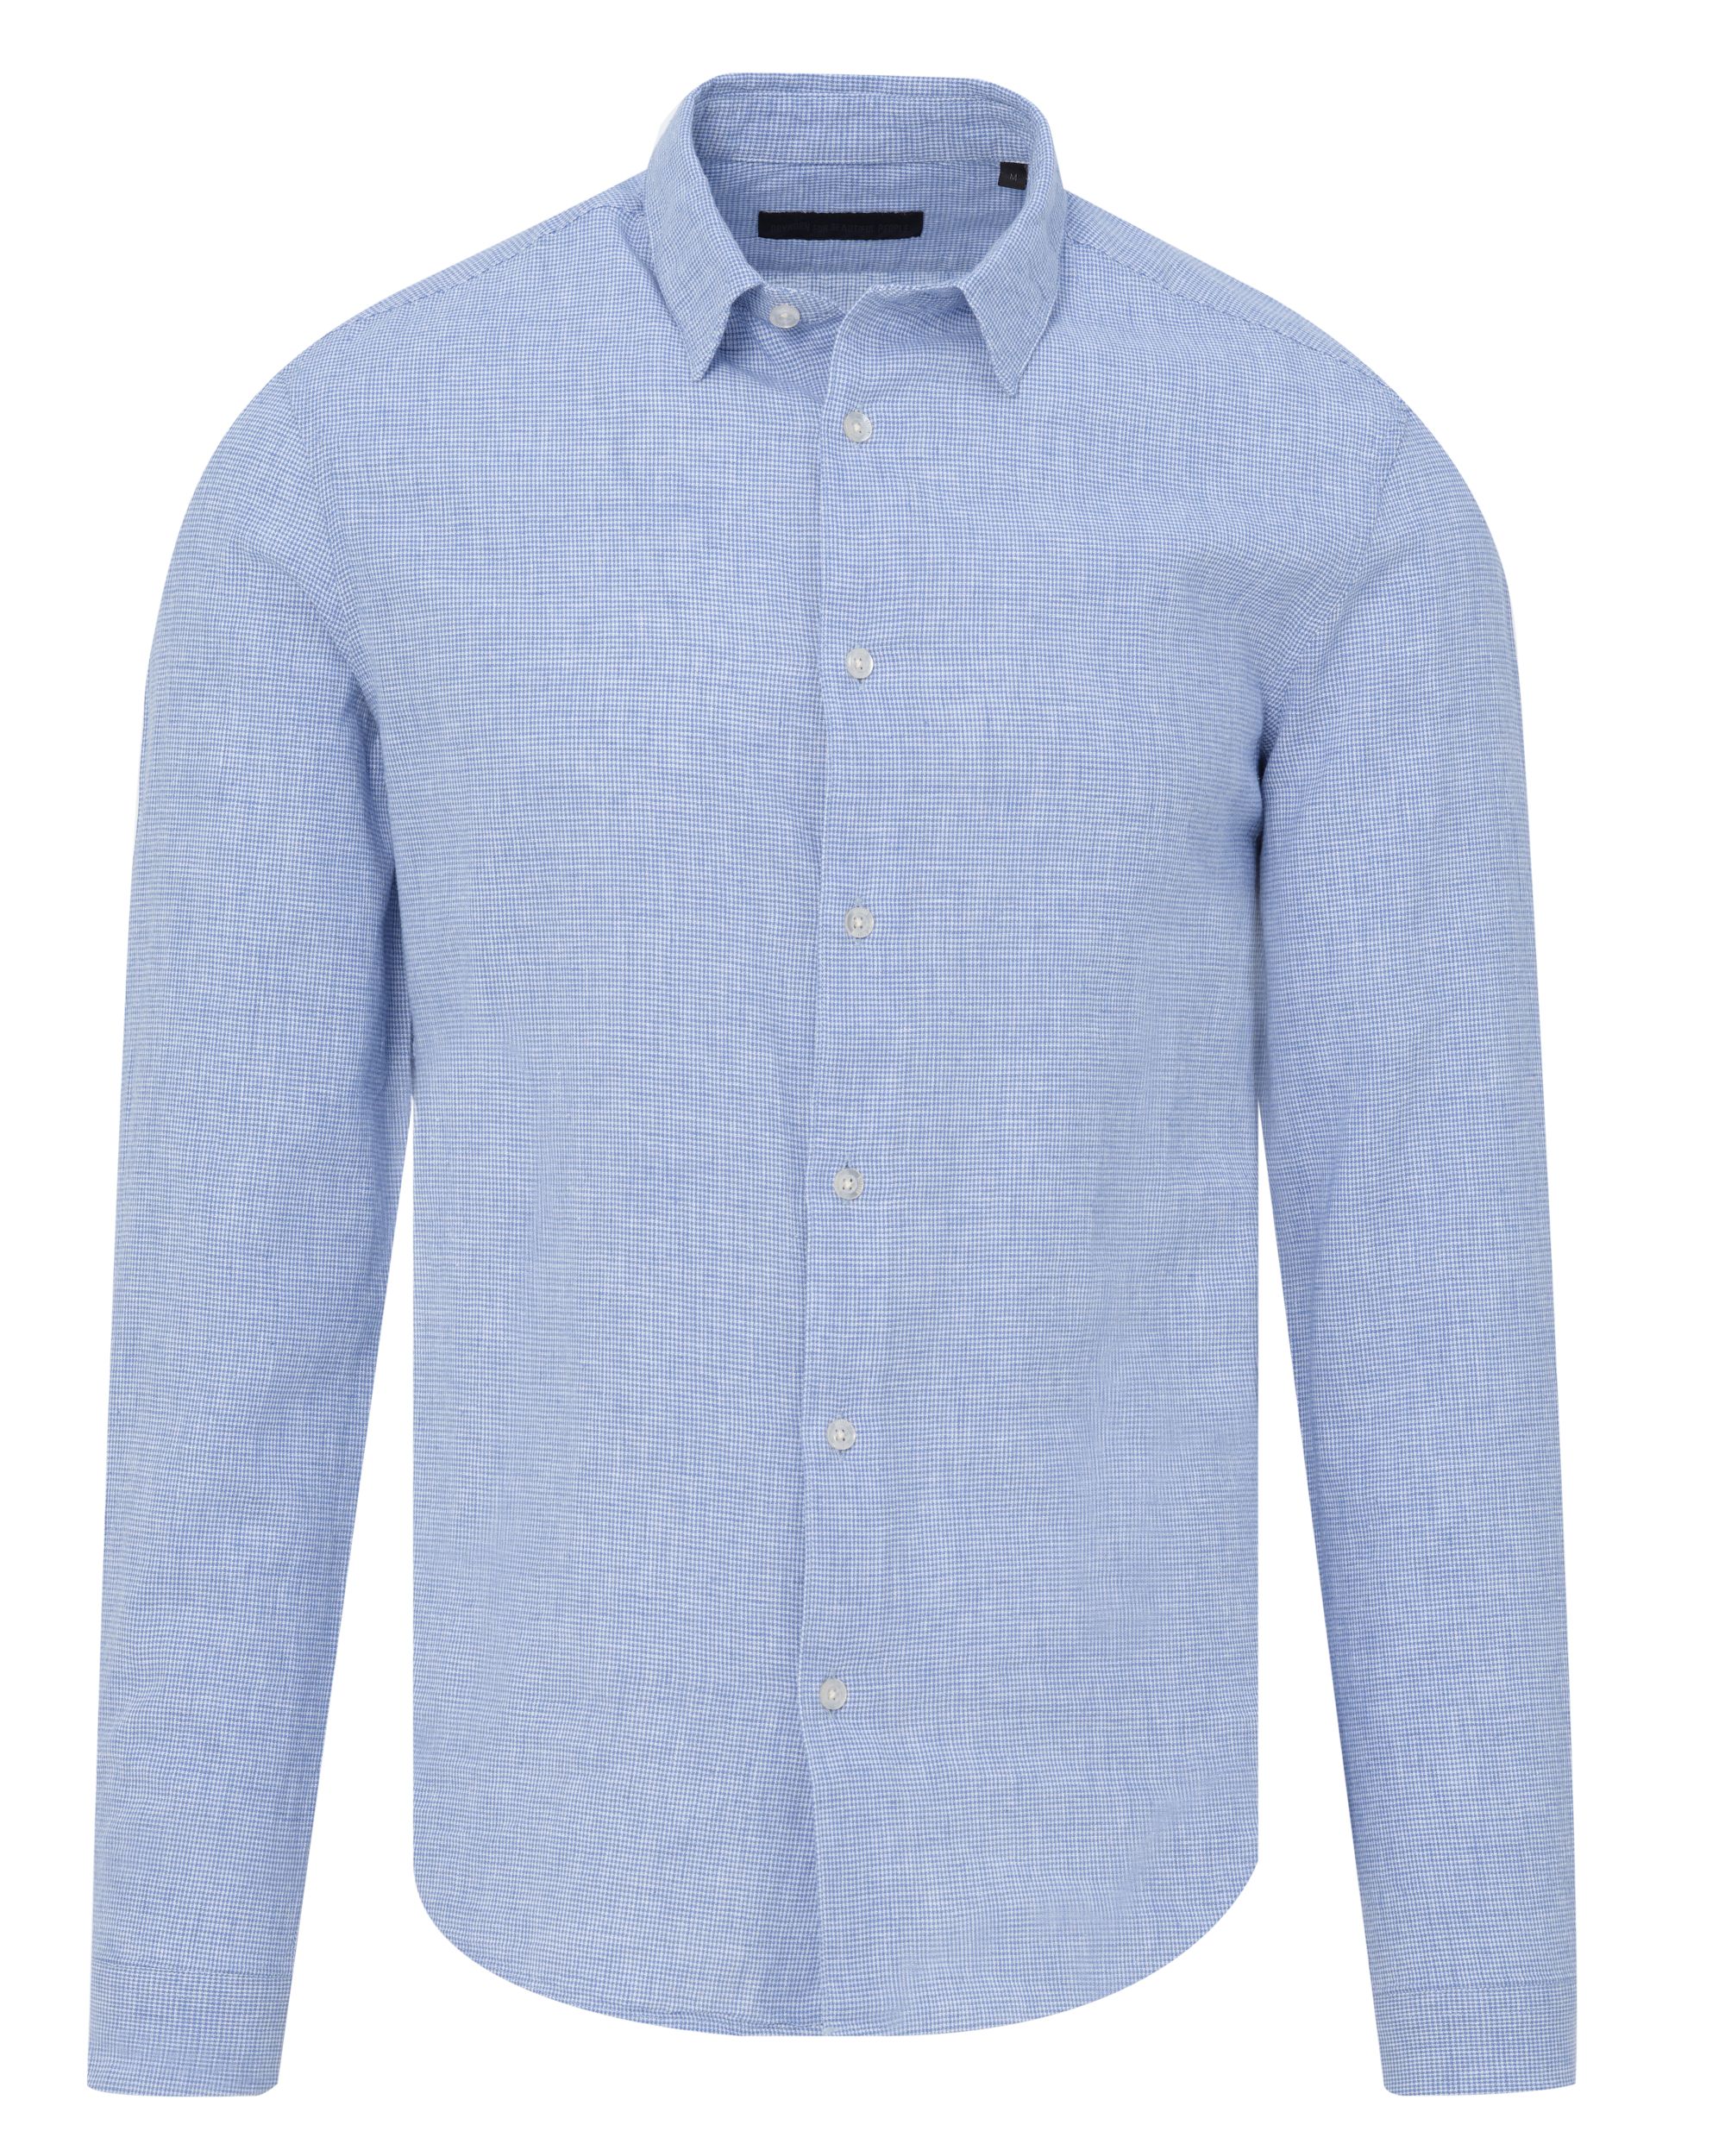 Drykorn Ruben Overhemd LM Blauw 085527-001-L